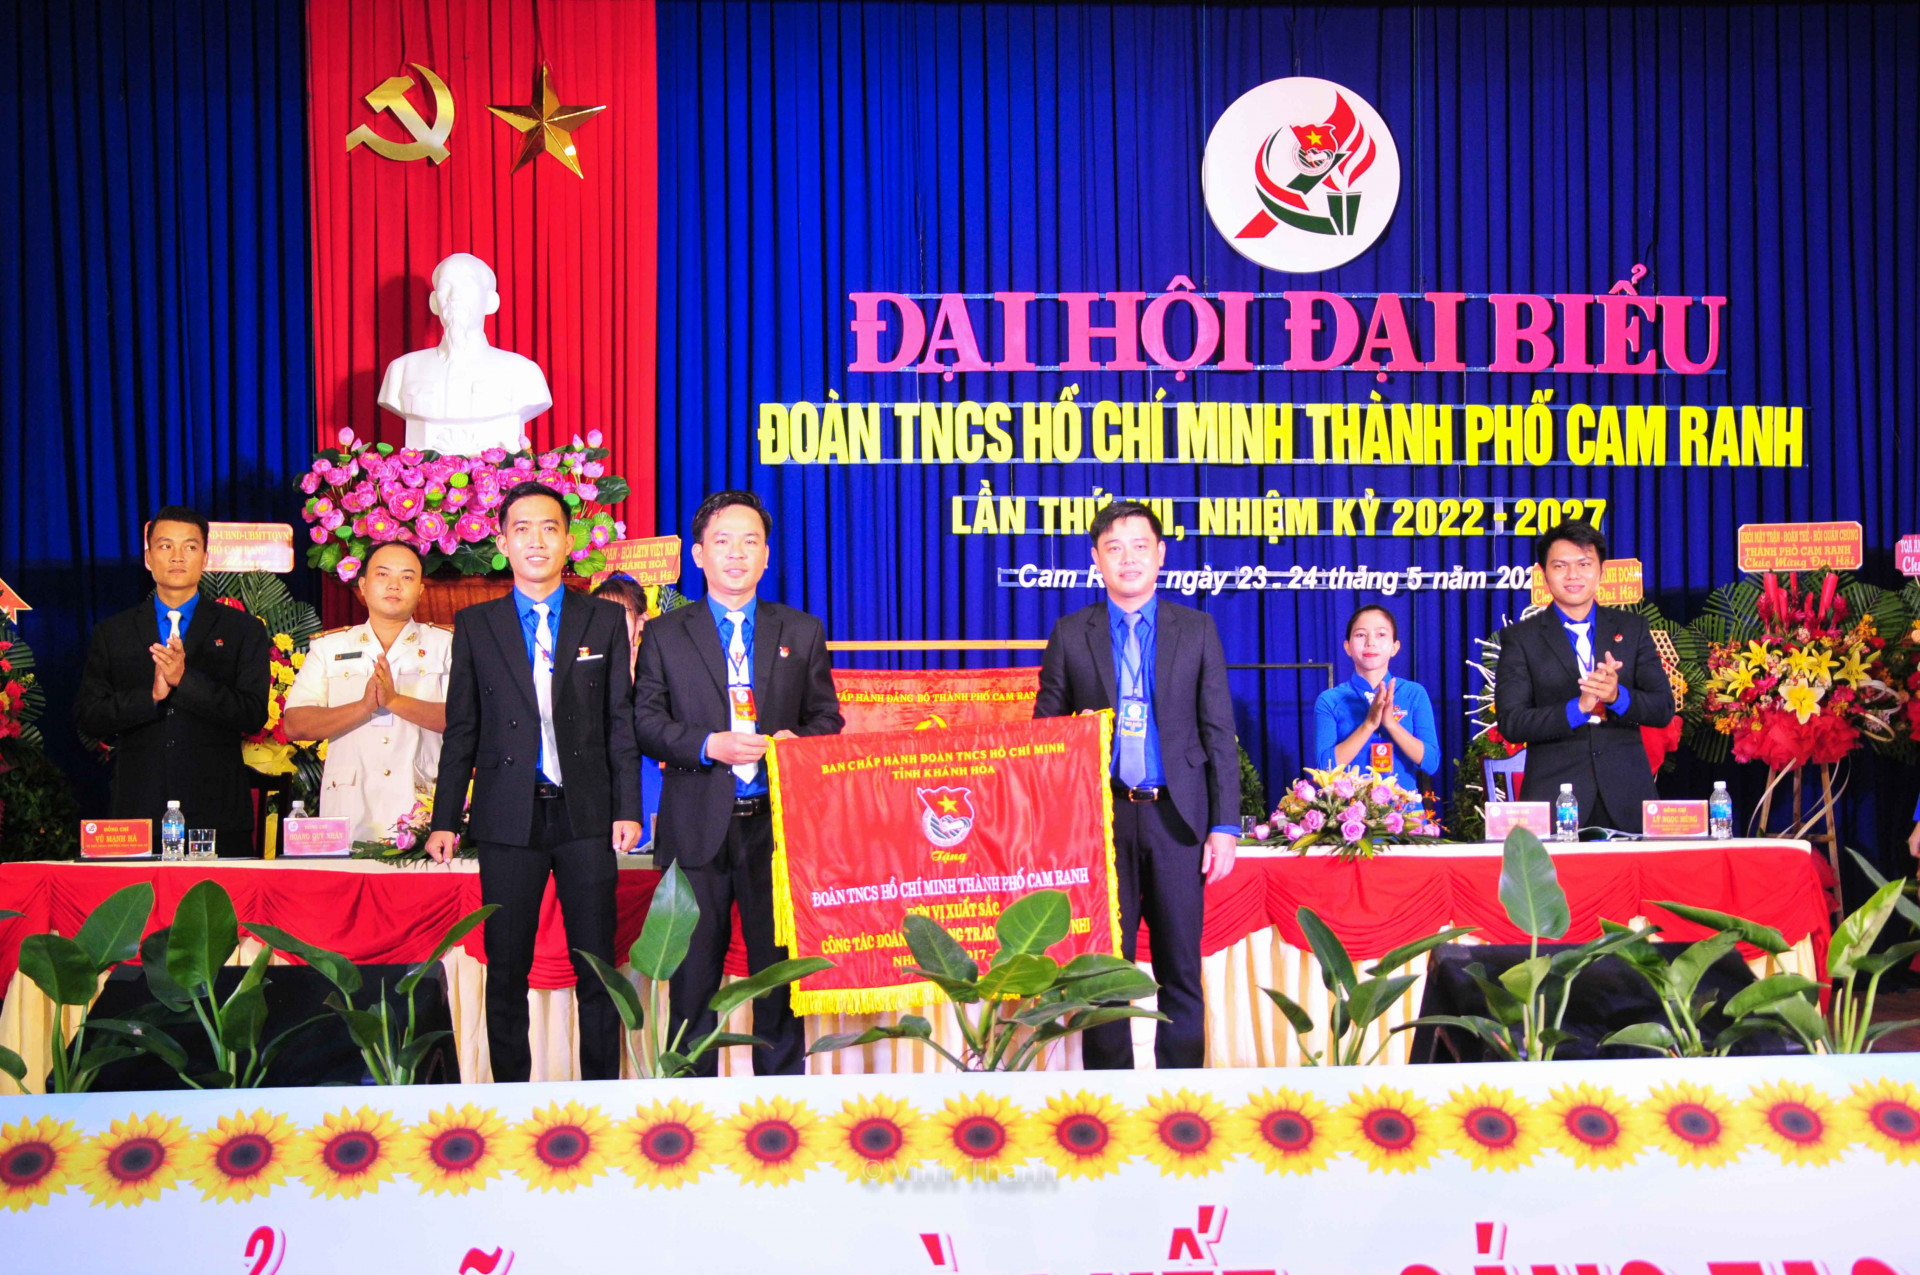 Lãnh đạo Tỉnh đoàn trao cờ thi đua xuất sắc nhiệm kỳ 2022 - 2027 cho Thành đoàn Cam Ranh